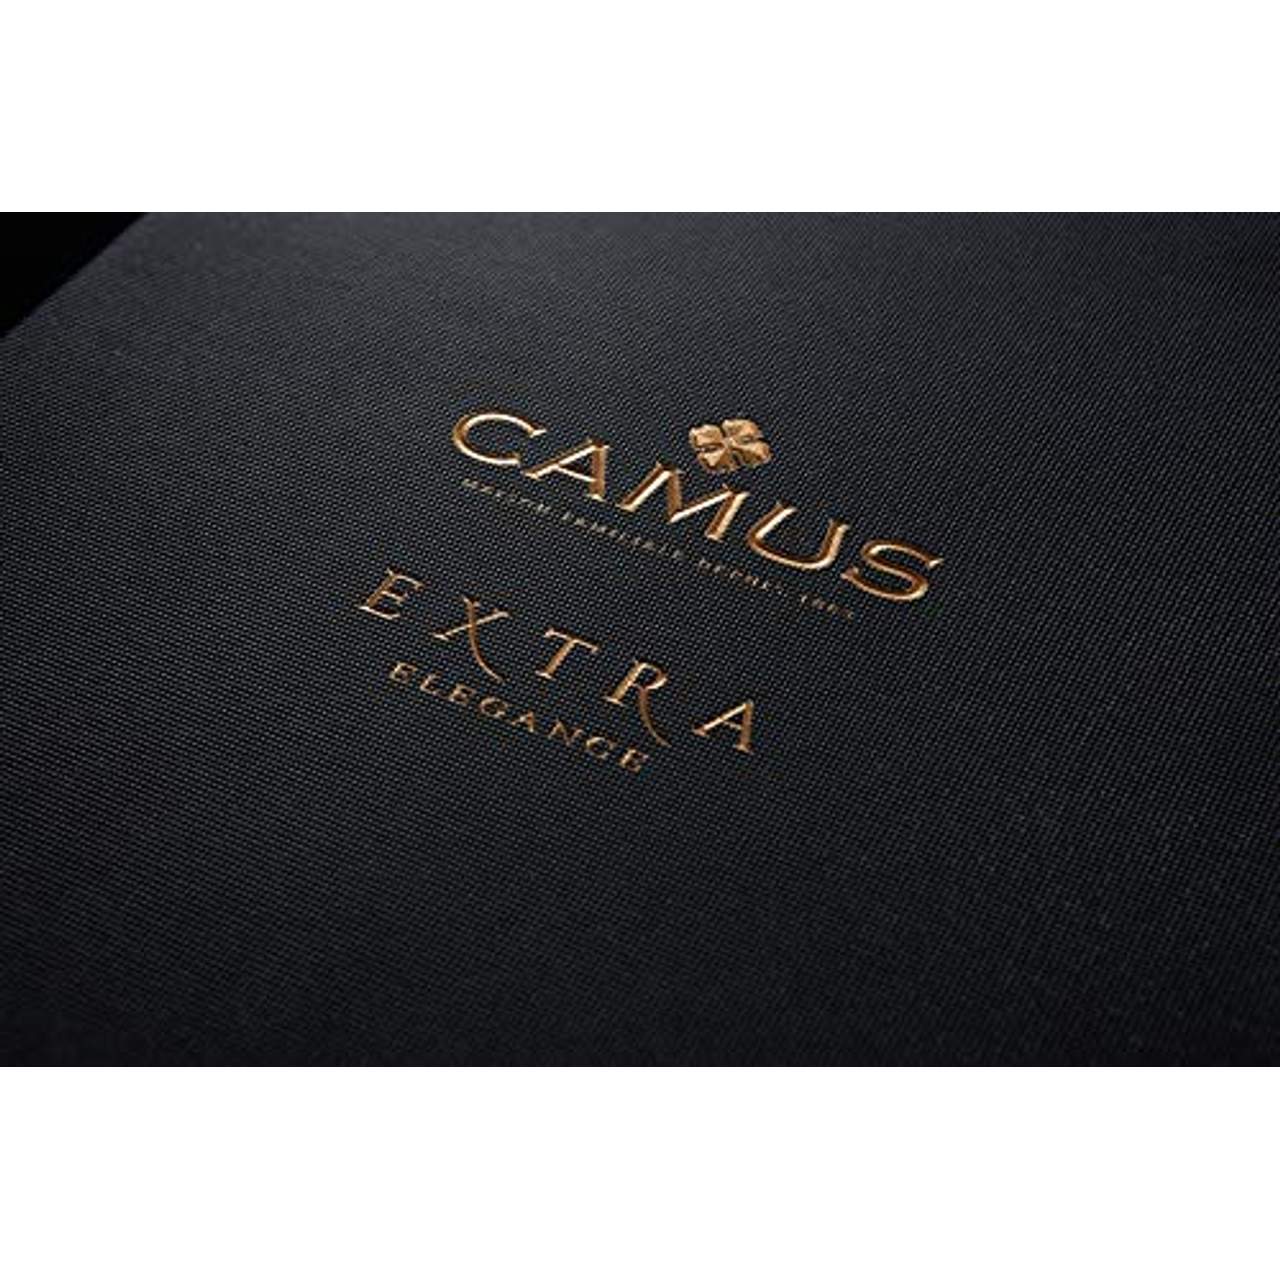 CAMUS Extra Elegance Cognac